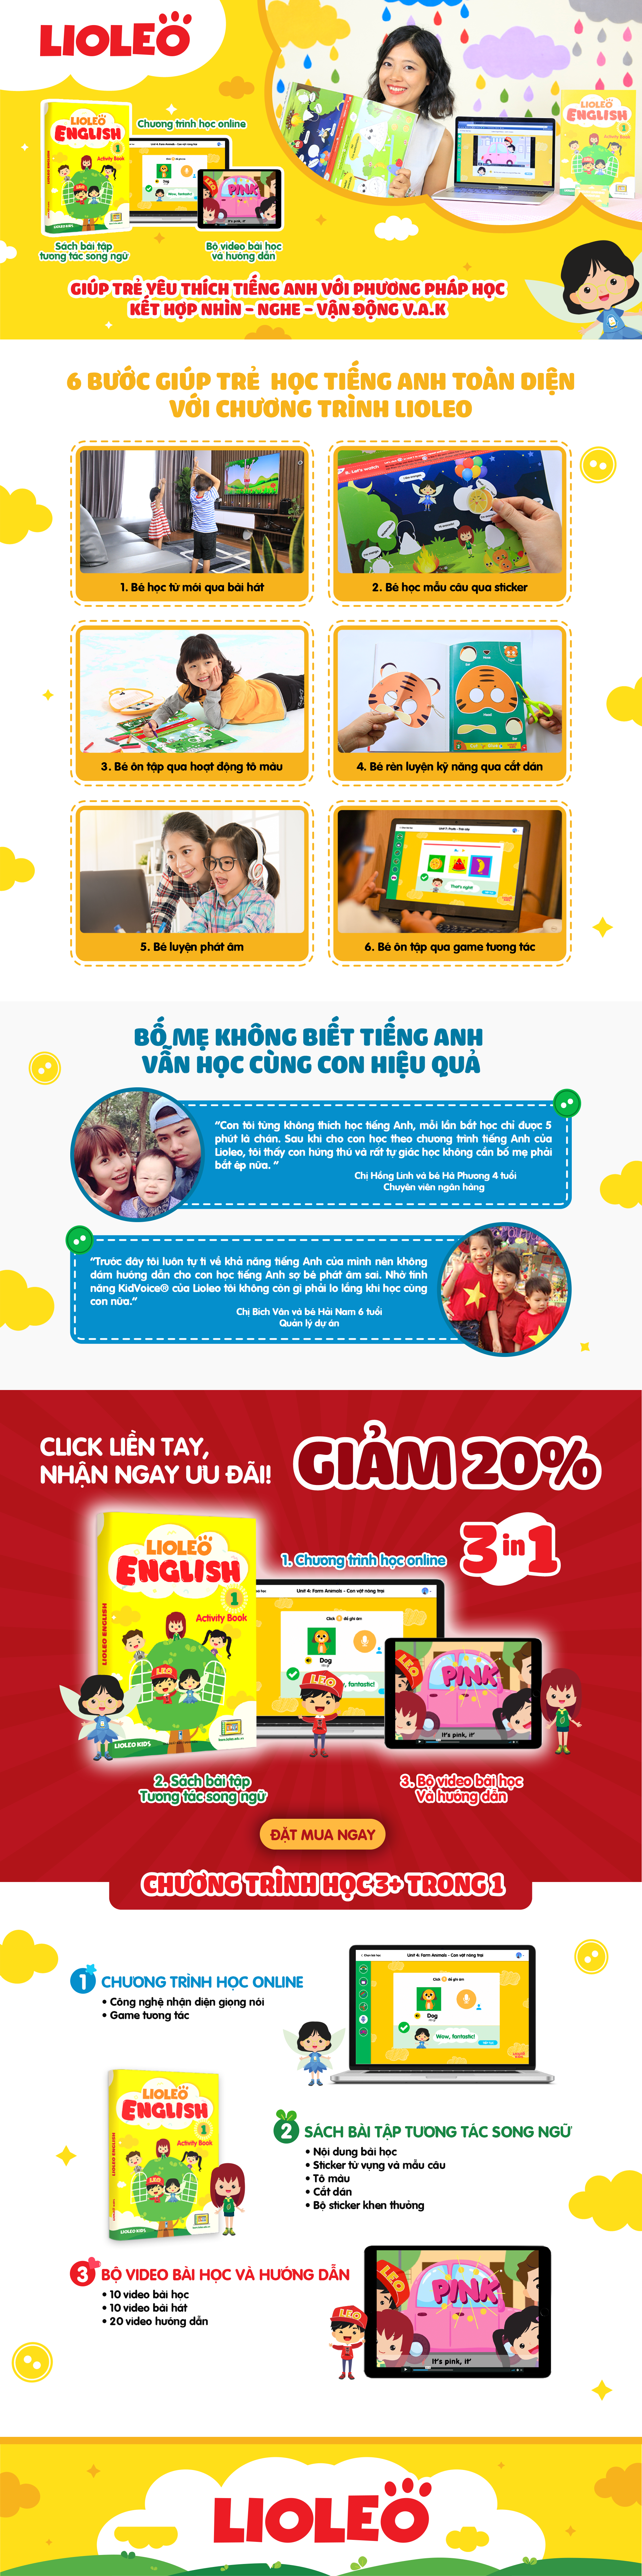 Chương trình học tiếng Anh cho trẻ em Lioleo English Kids